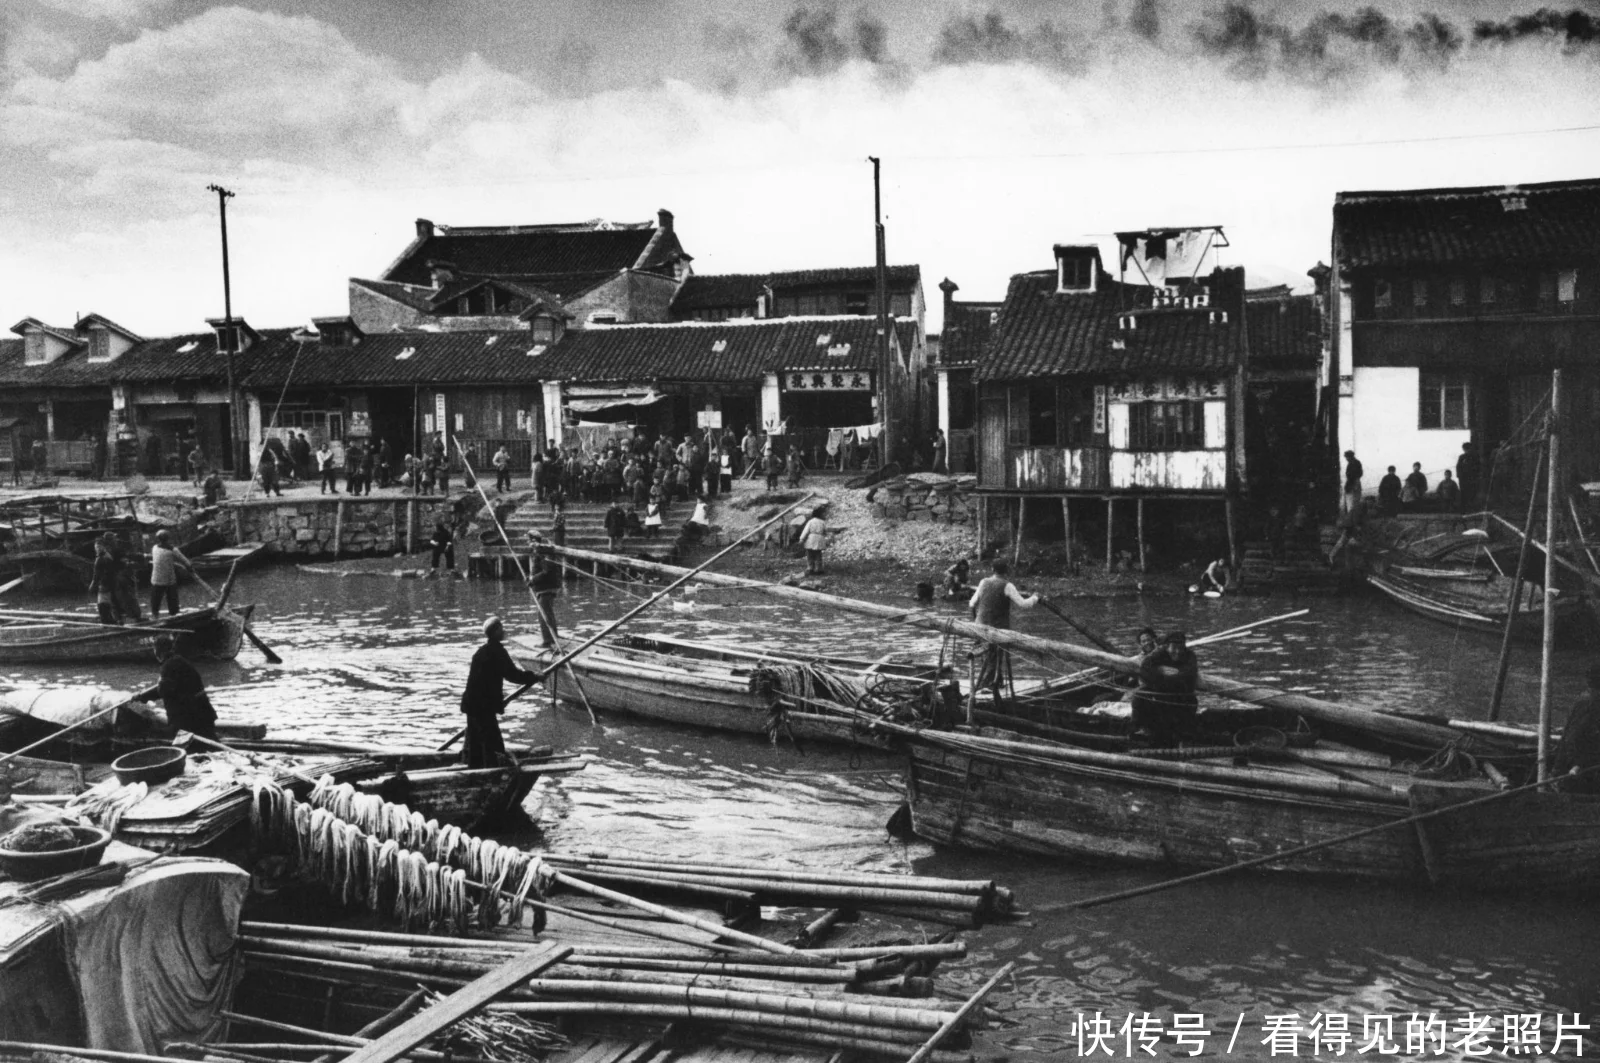 京杭大运河始建于春秋时期，是世界上里程最长、工程最大的古代运河，也是最古老的运河之一，与长城、坎儿井并称为中国古代的三项伟大工程，并且使用至今。